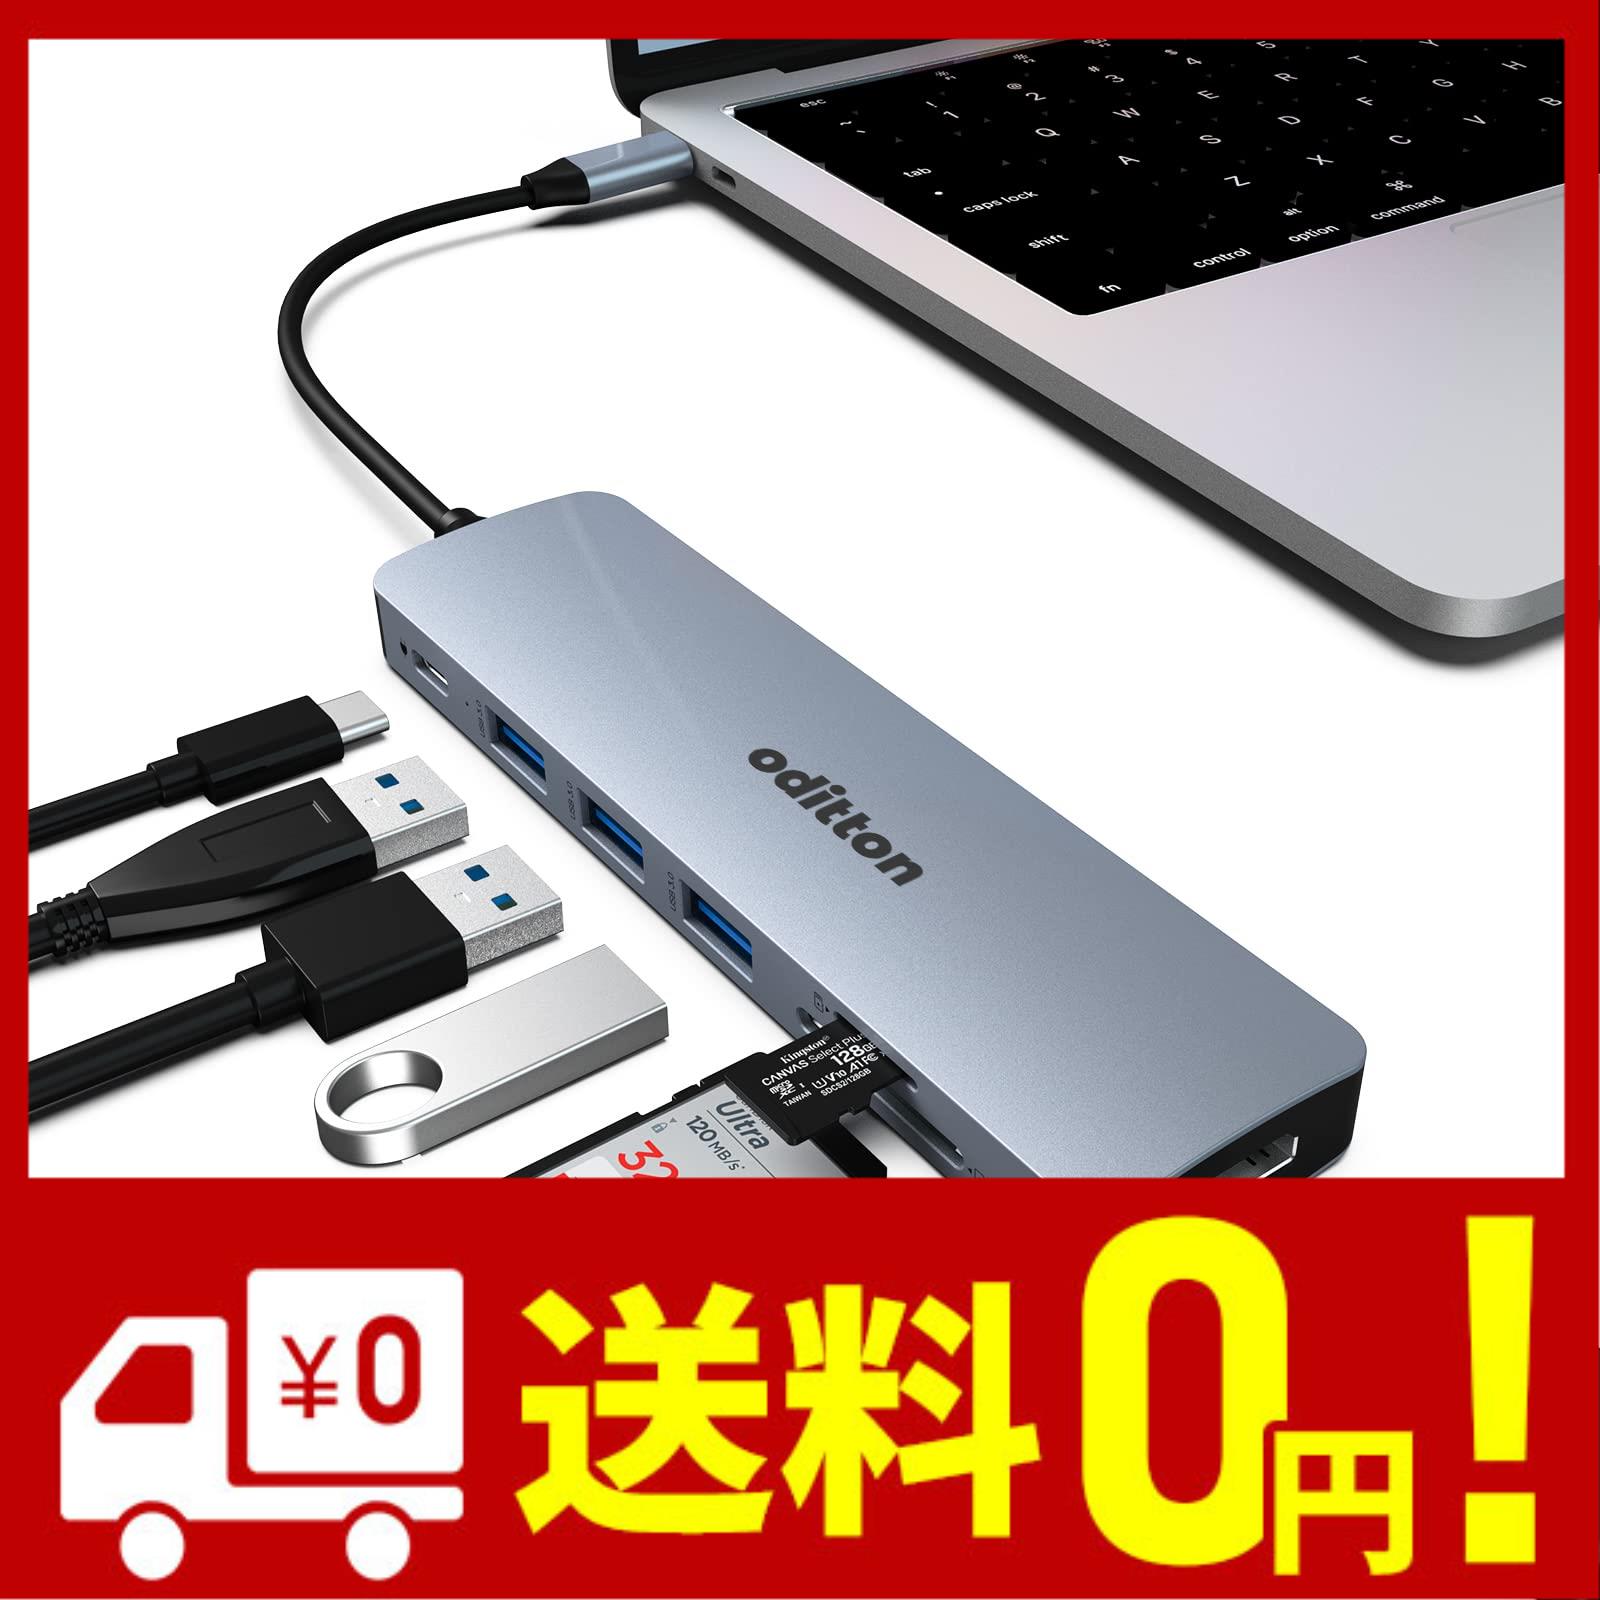 USB C ハブ oditton USB C ドッキング ステーション 7 in 1 USB ハブ マルチポート アダプター HDMI 100W PD 3 USB 3.0 Type C ラッ